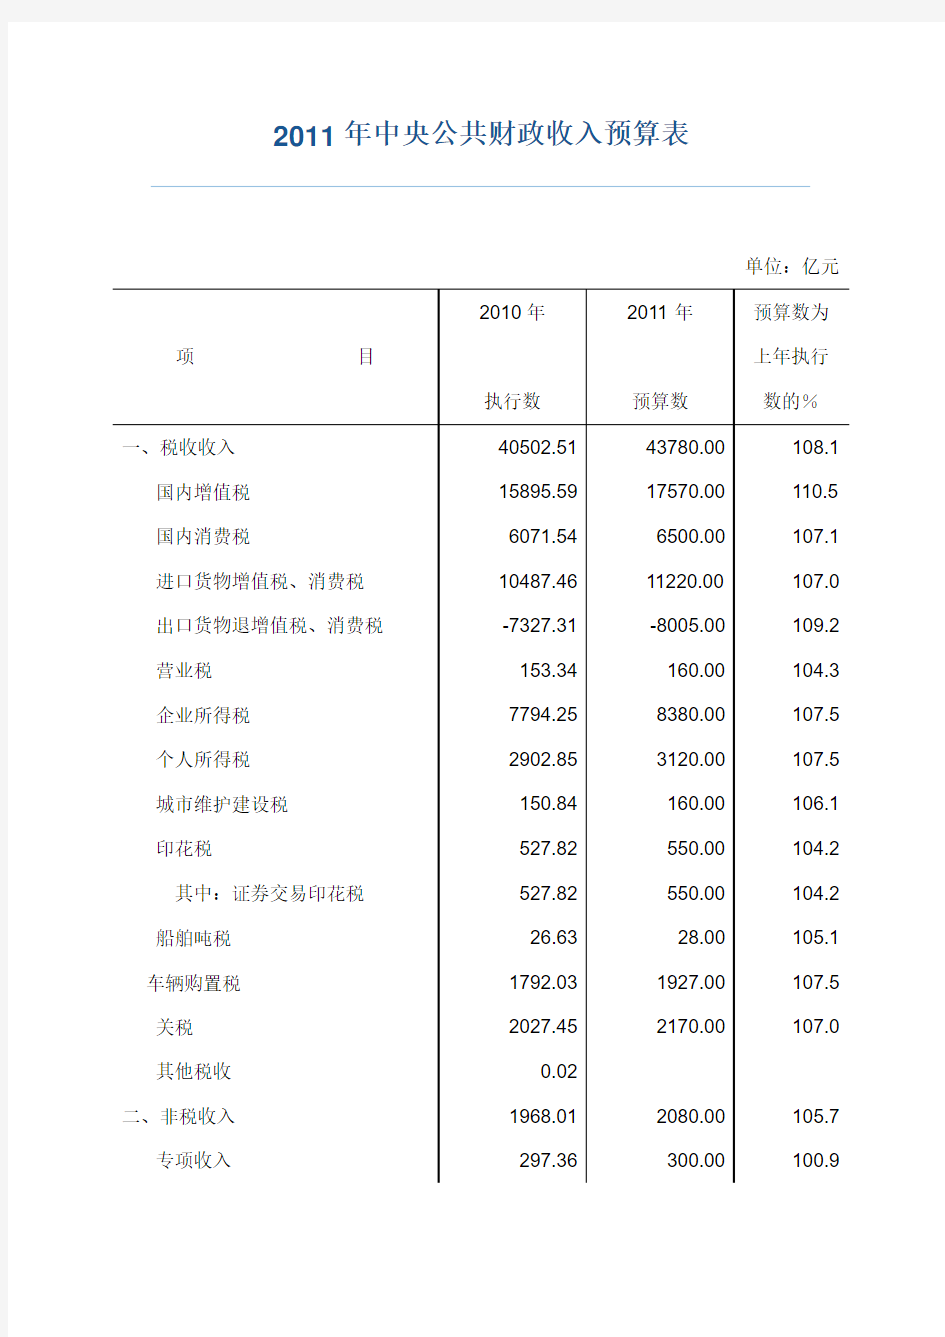 2011年公共财政收入和支出预算表